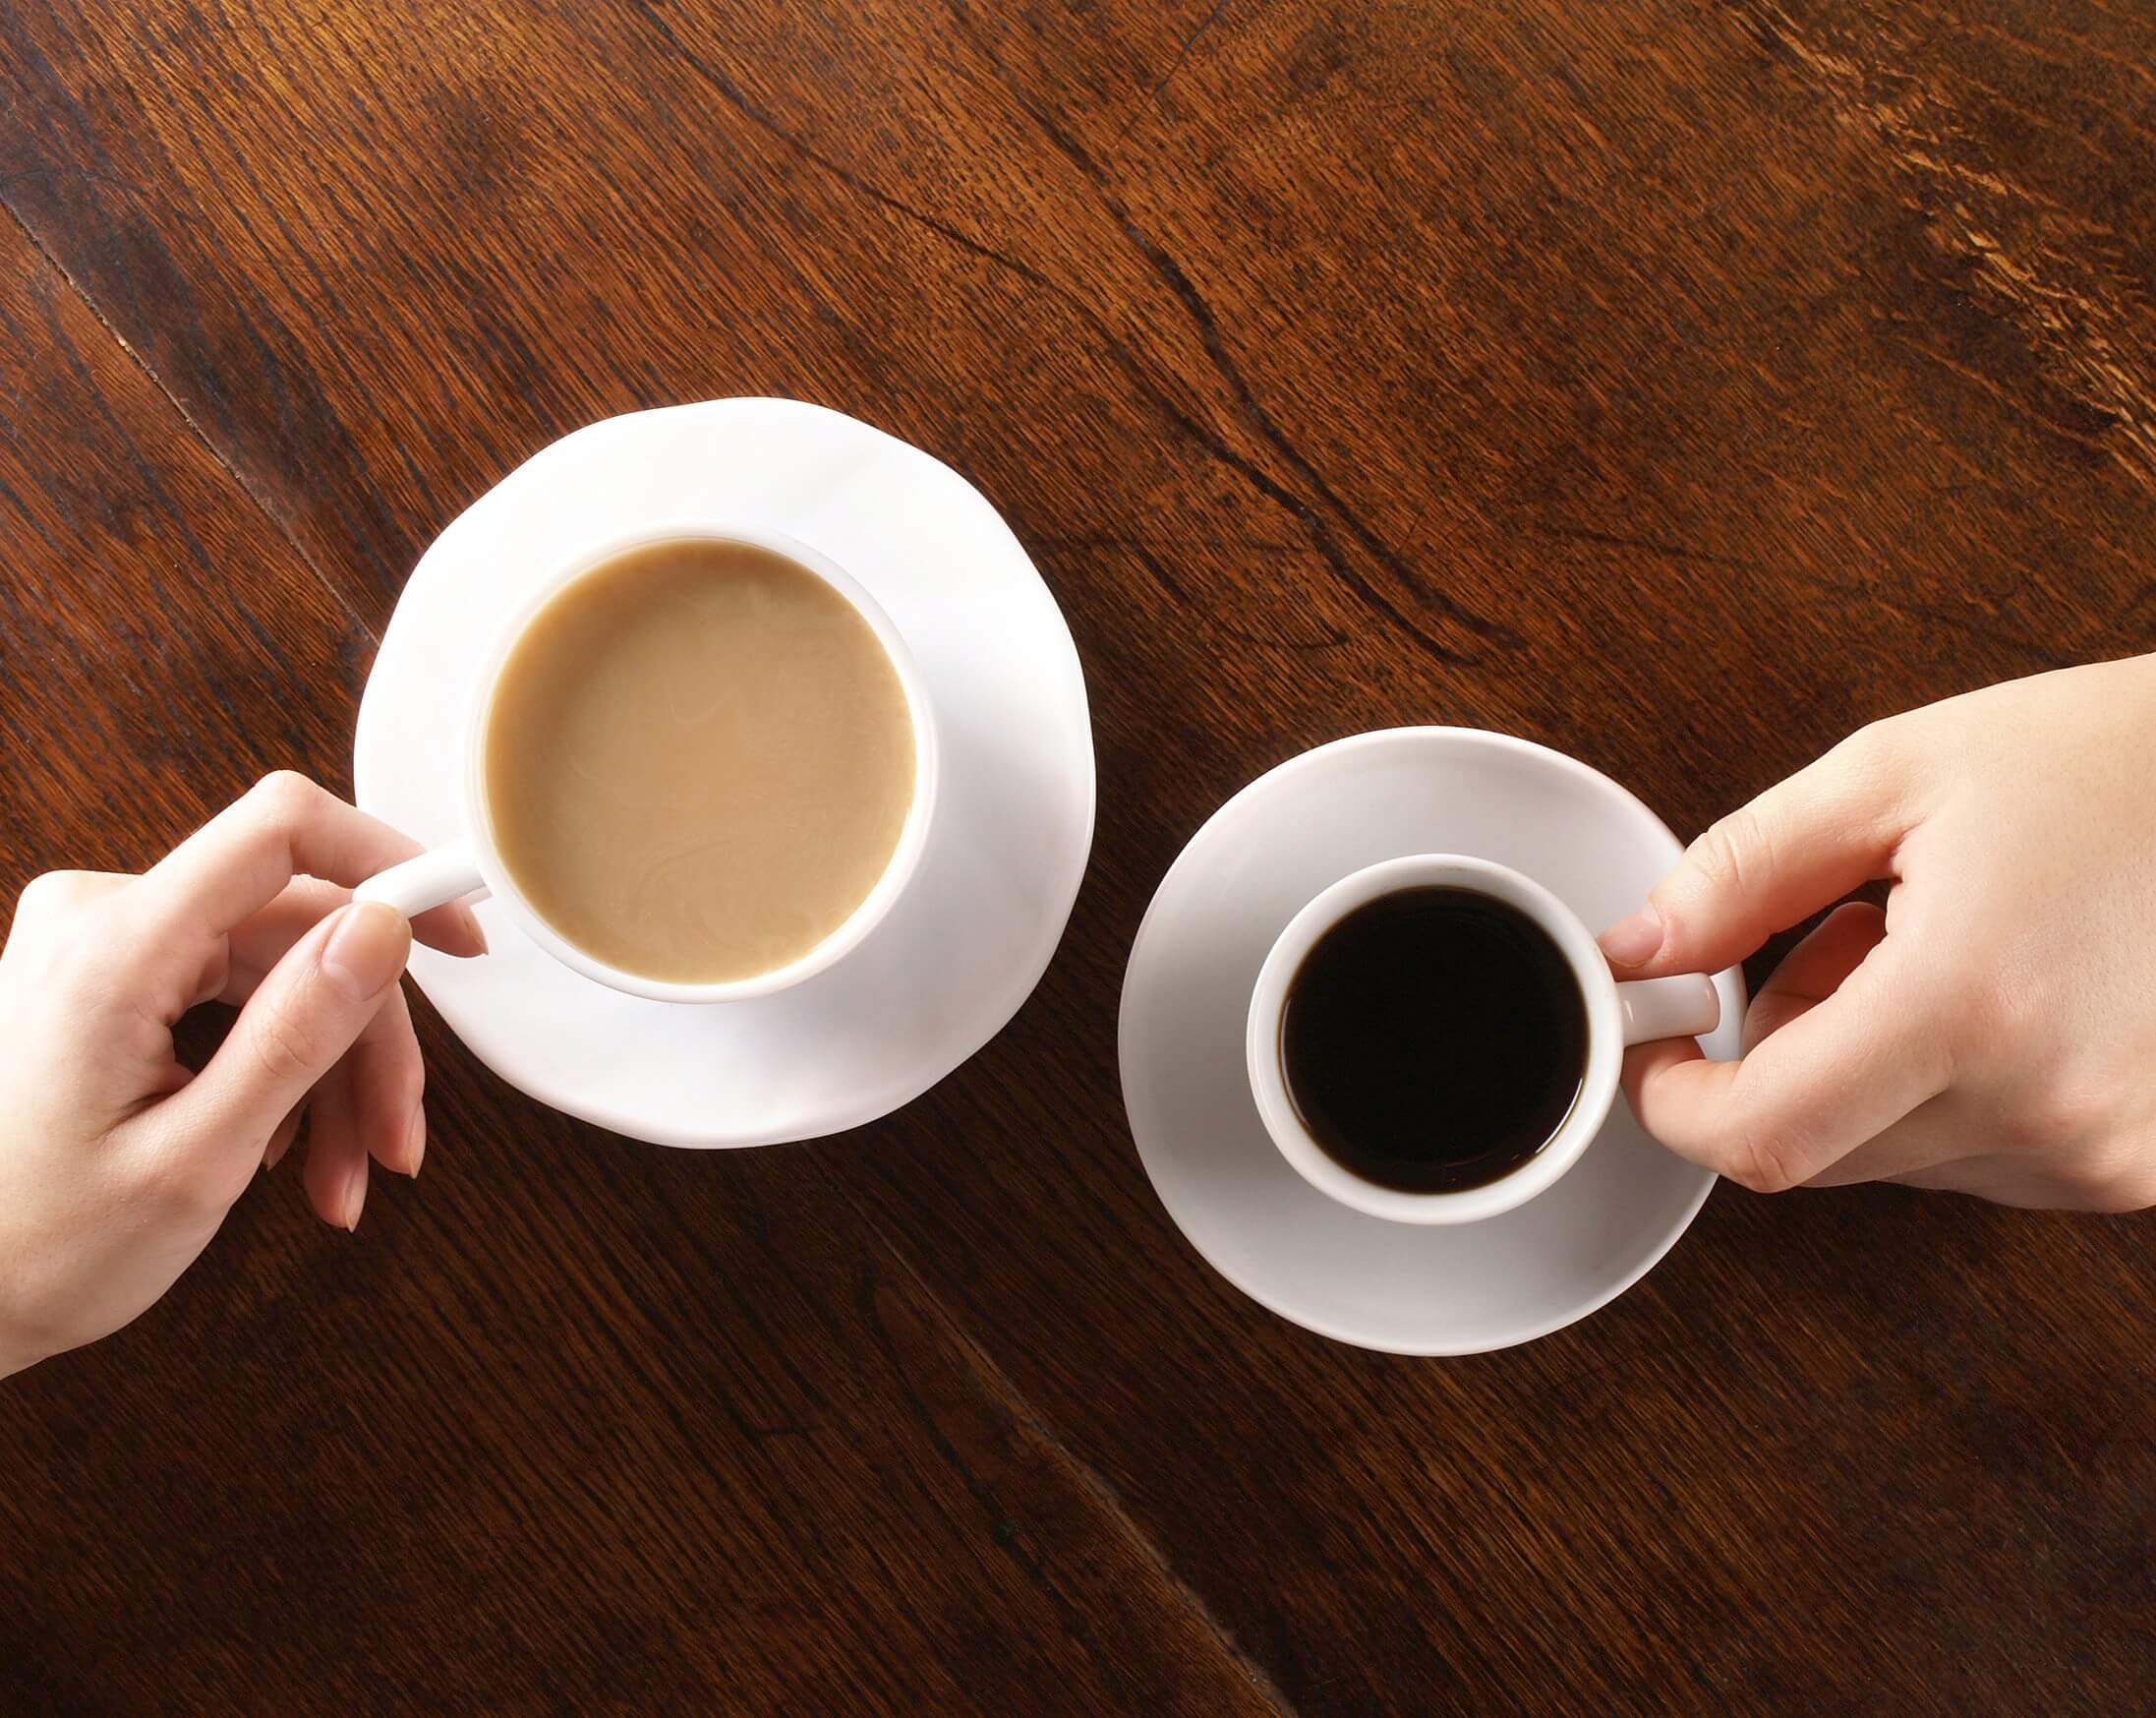 Lo que es más útil el té o el café? 6 consejos sobre el té, que usted no sabía